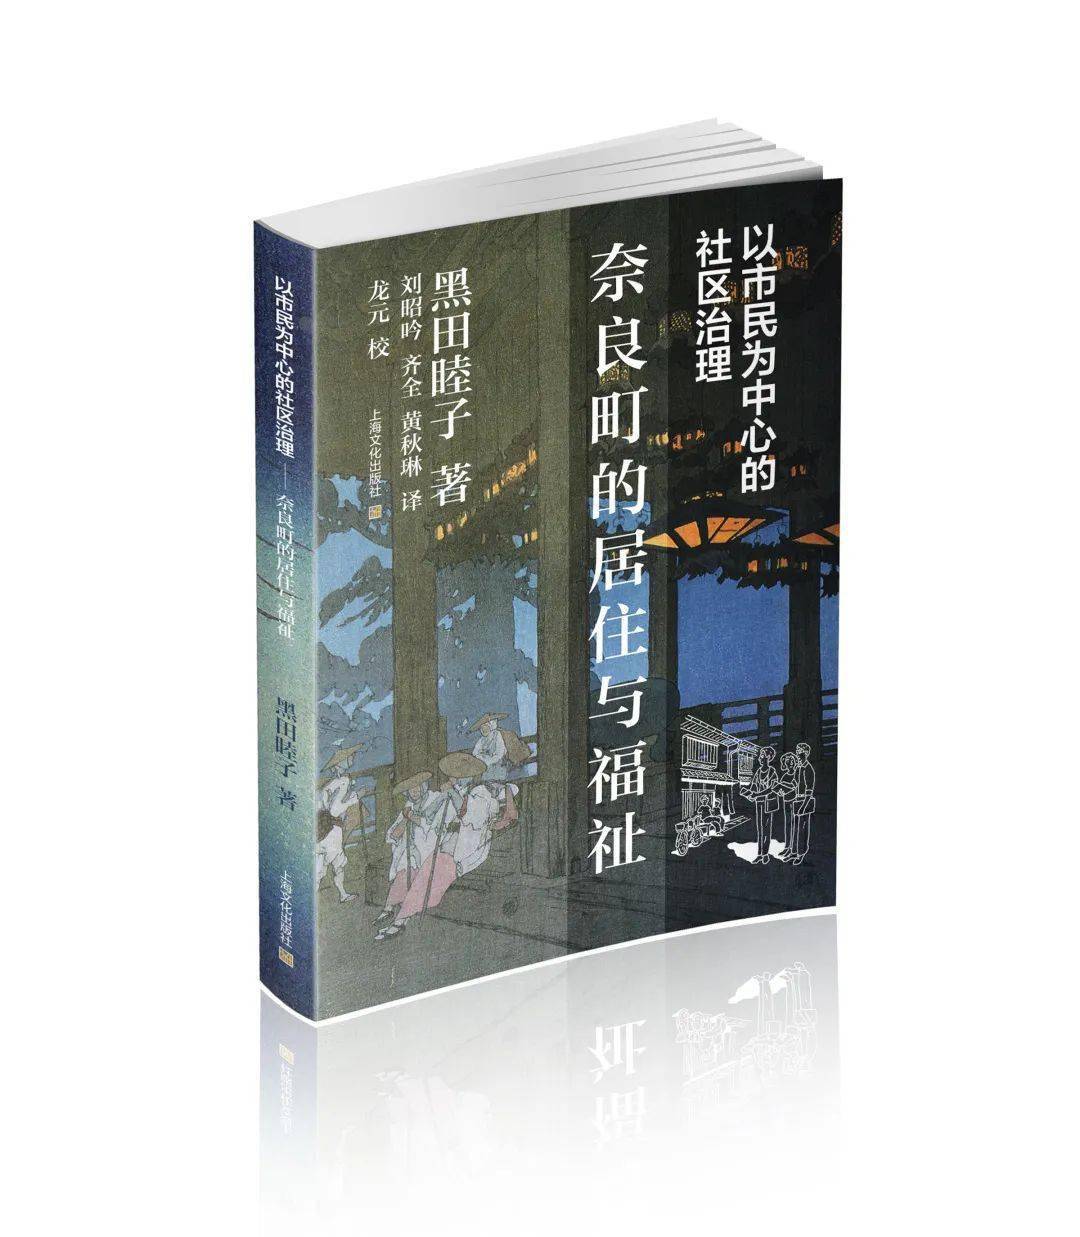 上海出版·每月书单| 上海文化出版社2022年9月书单_手机搜狐网